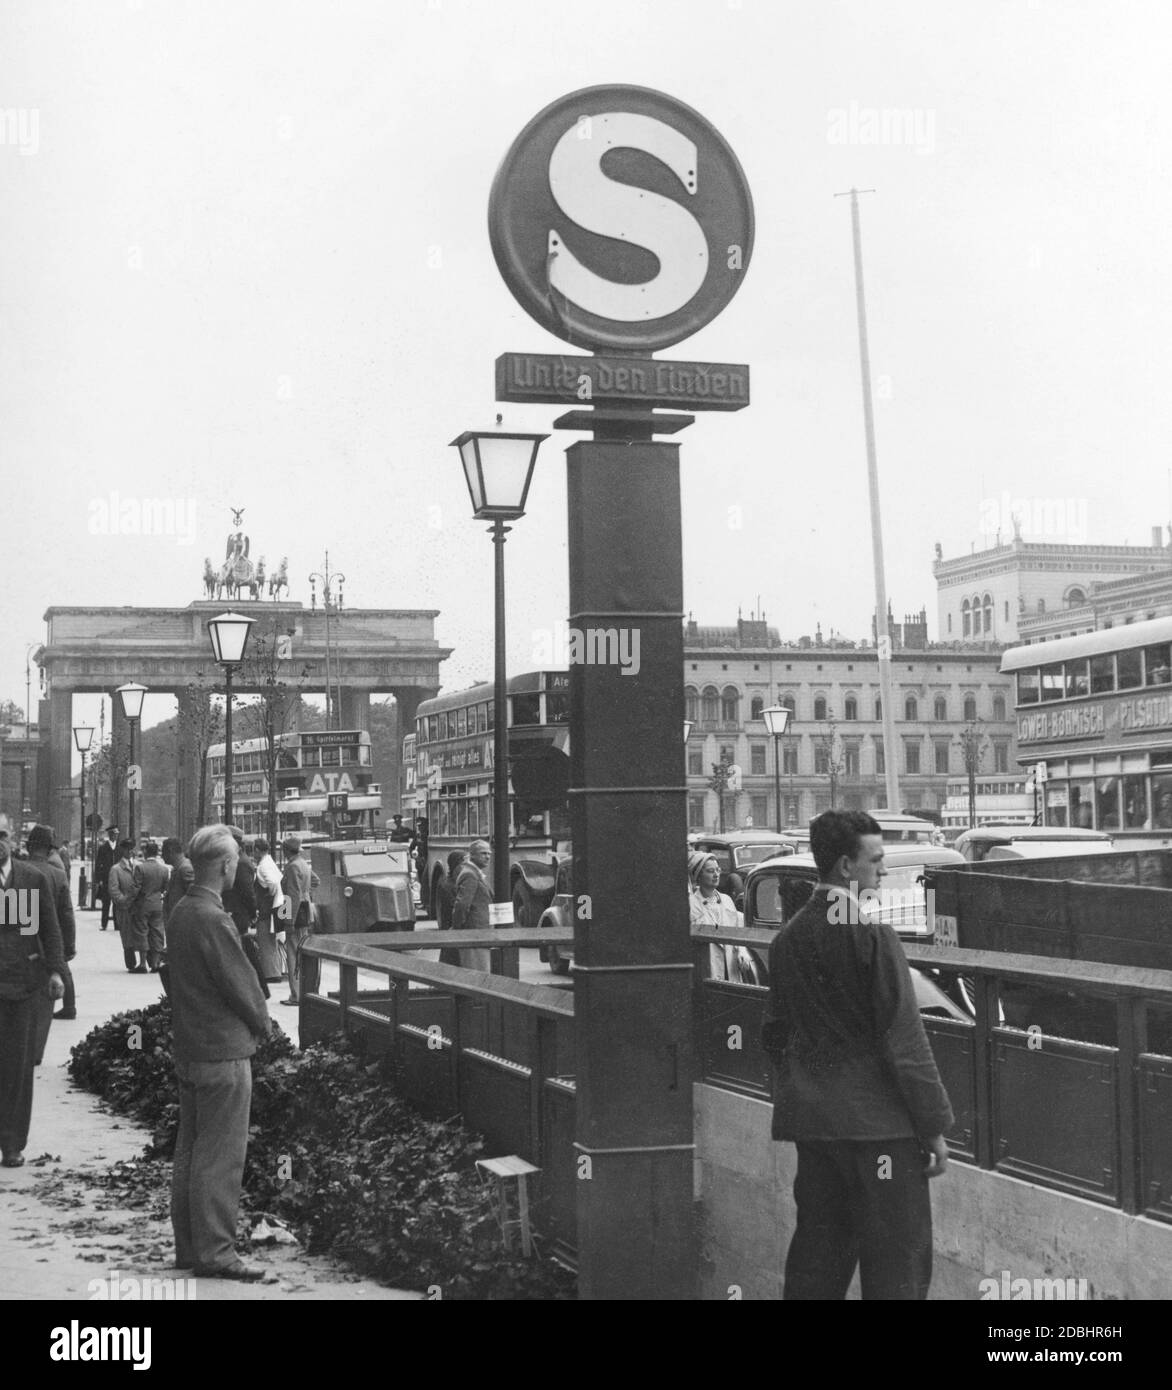 Blick auf den S-Bahnhof unter den Linden in Berlin. Im Hintergrund das Brandenburger Tor und die Sightseeing-Busse. Undatierte Aufnahme. Stockfoto